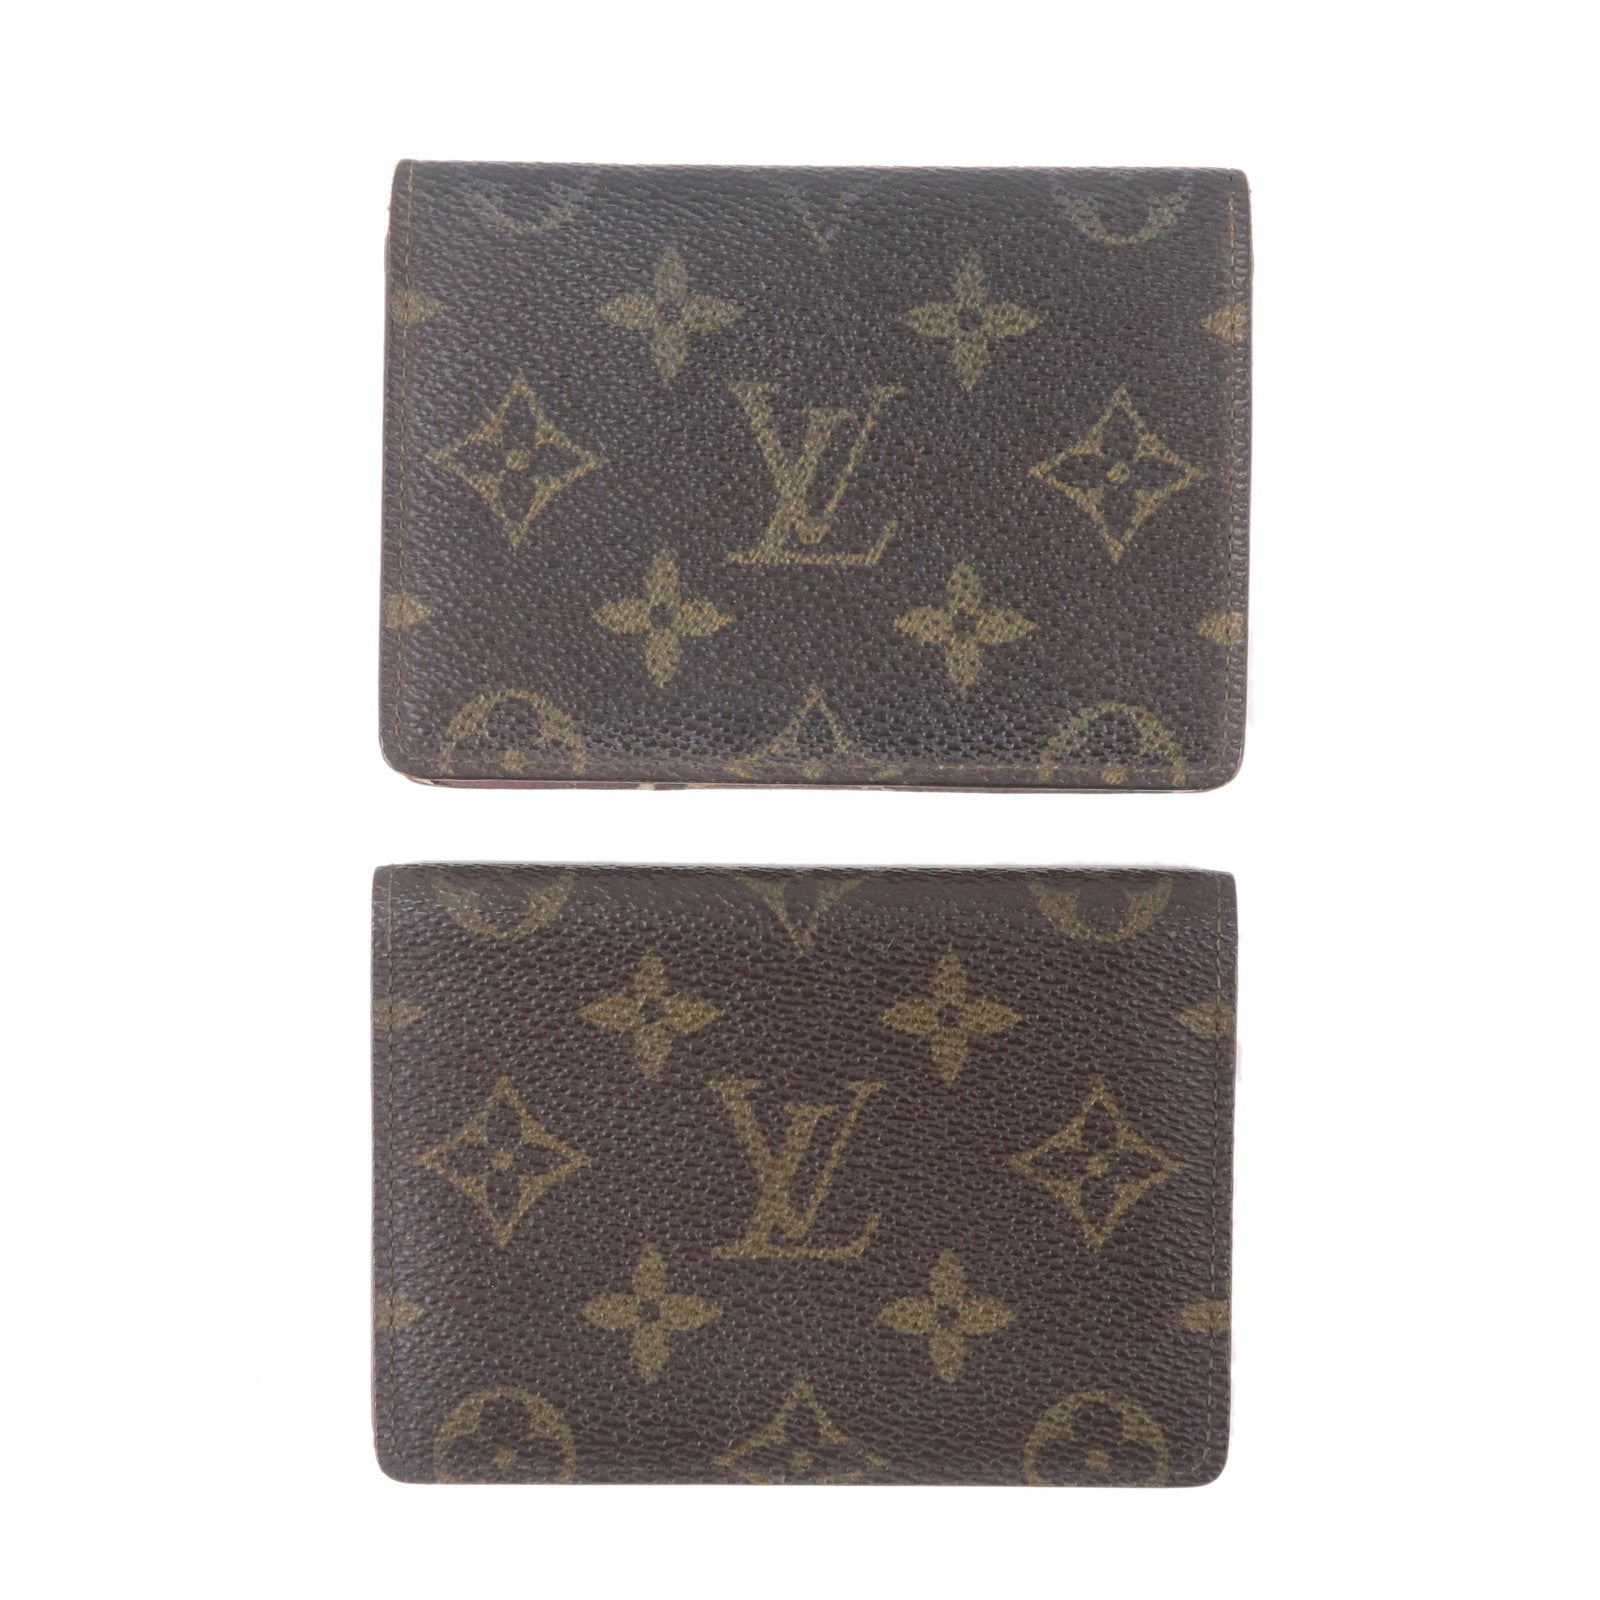 Louis Vuitton X Supreme Wallet Stolen